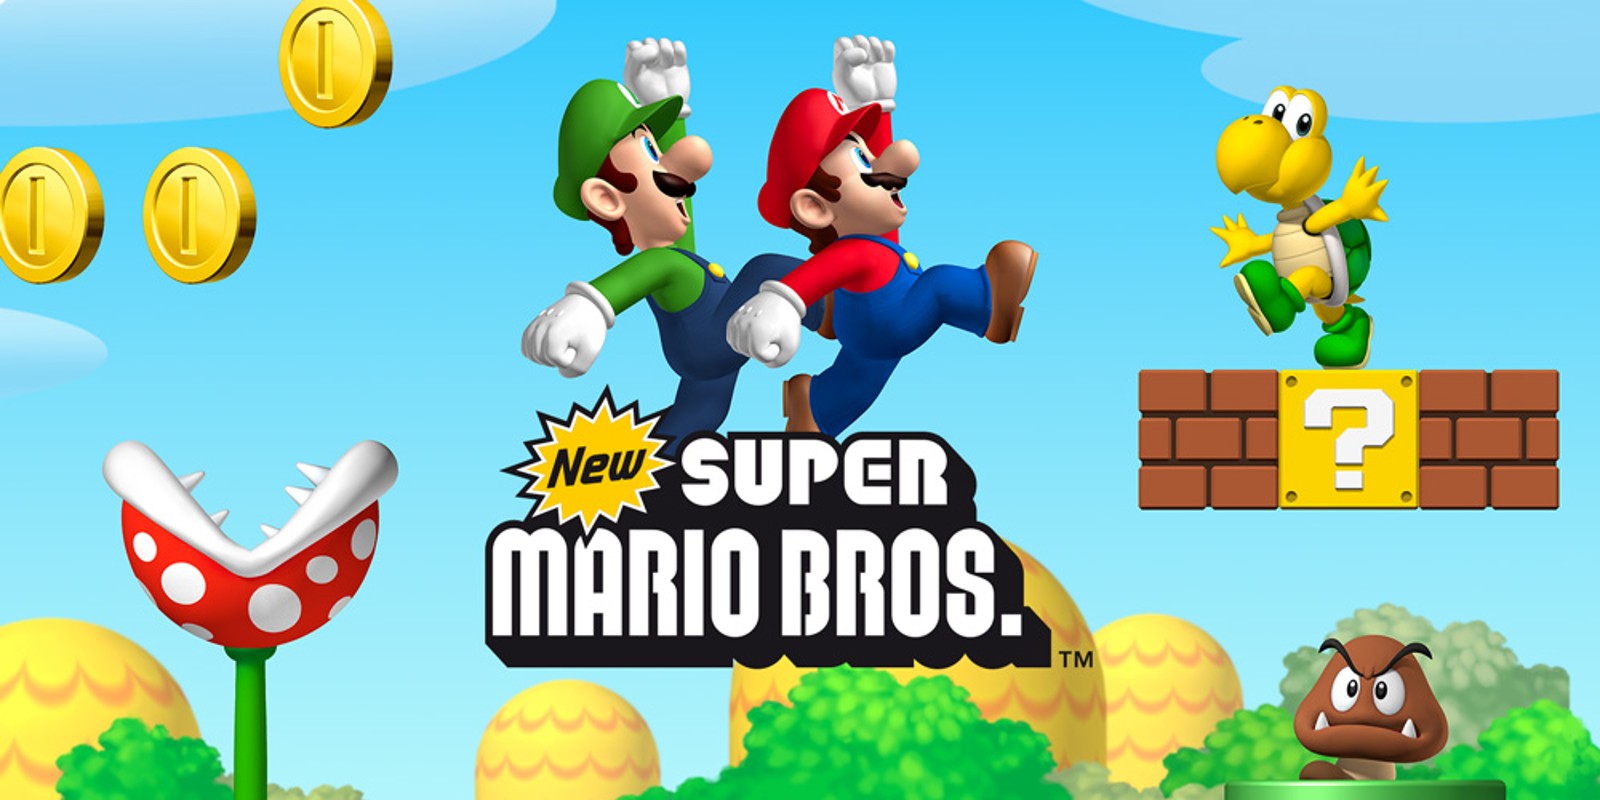 Mus un acreedor diferente a New Super Mario Bros. | Nintendo DS | Juegos | Nintendo